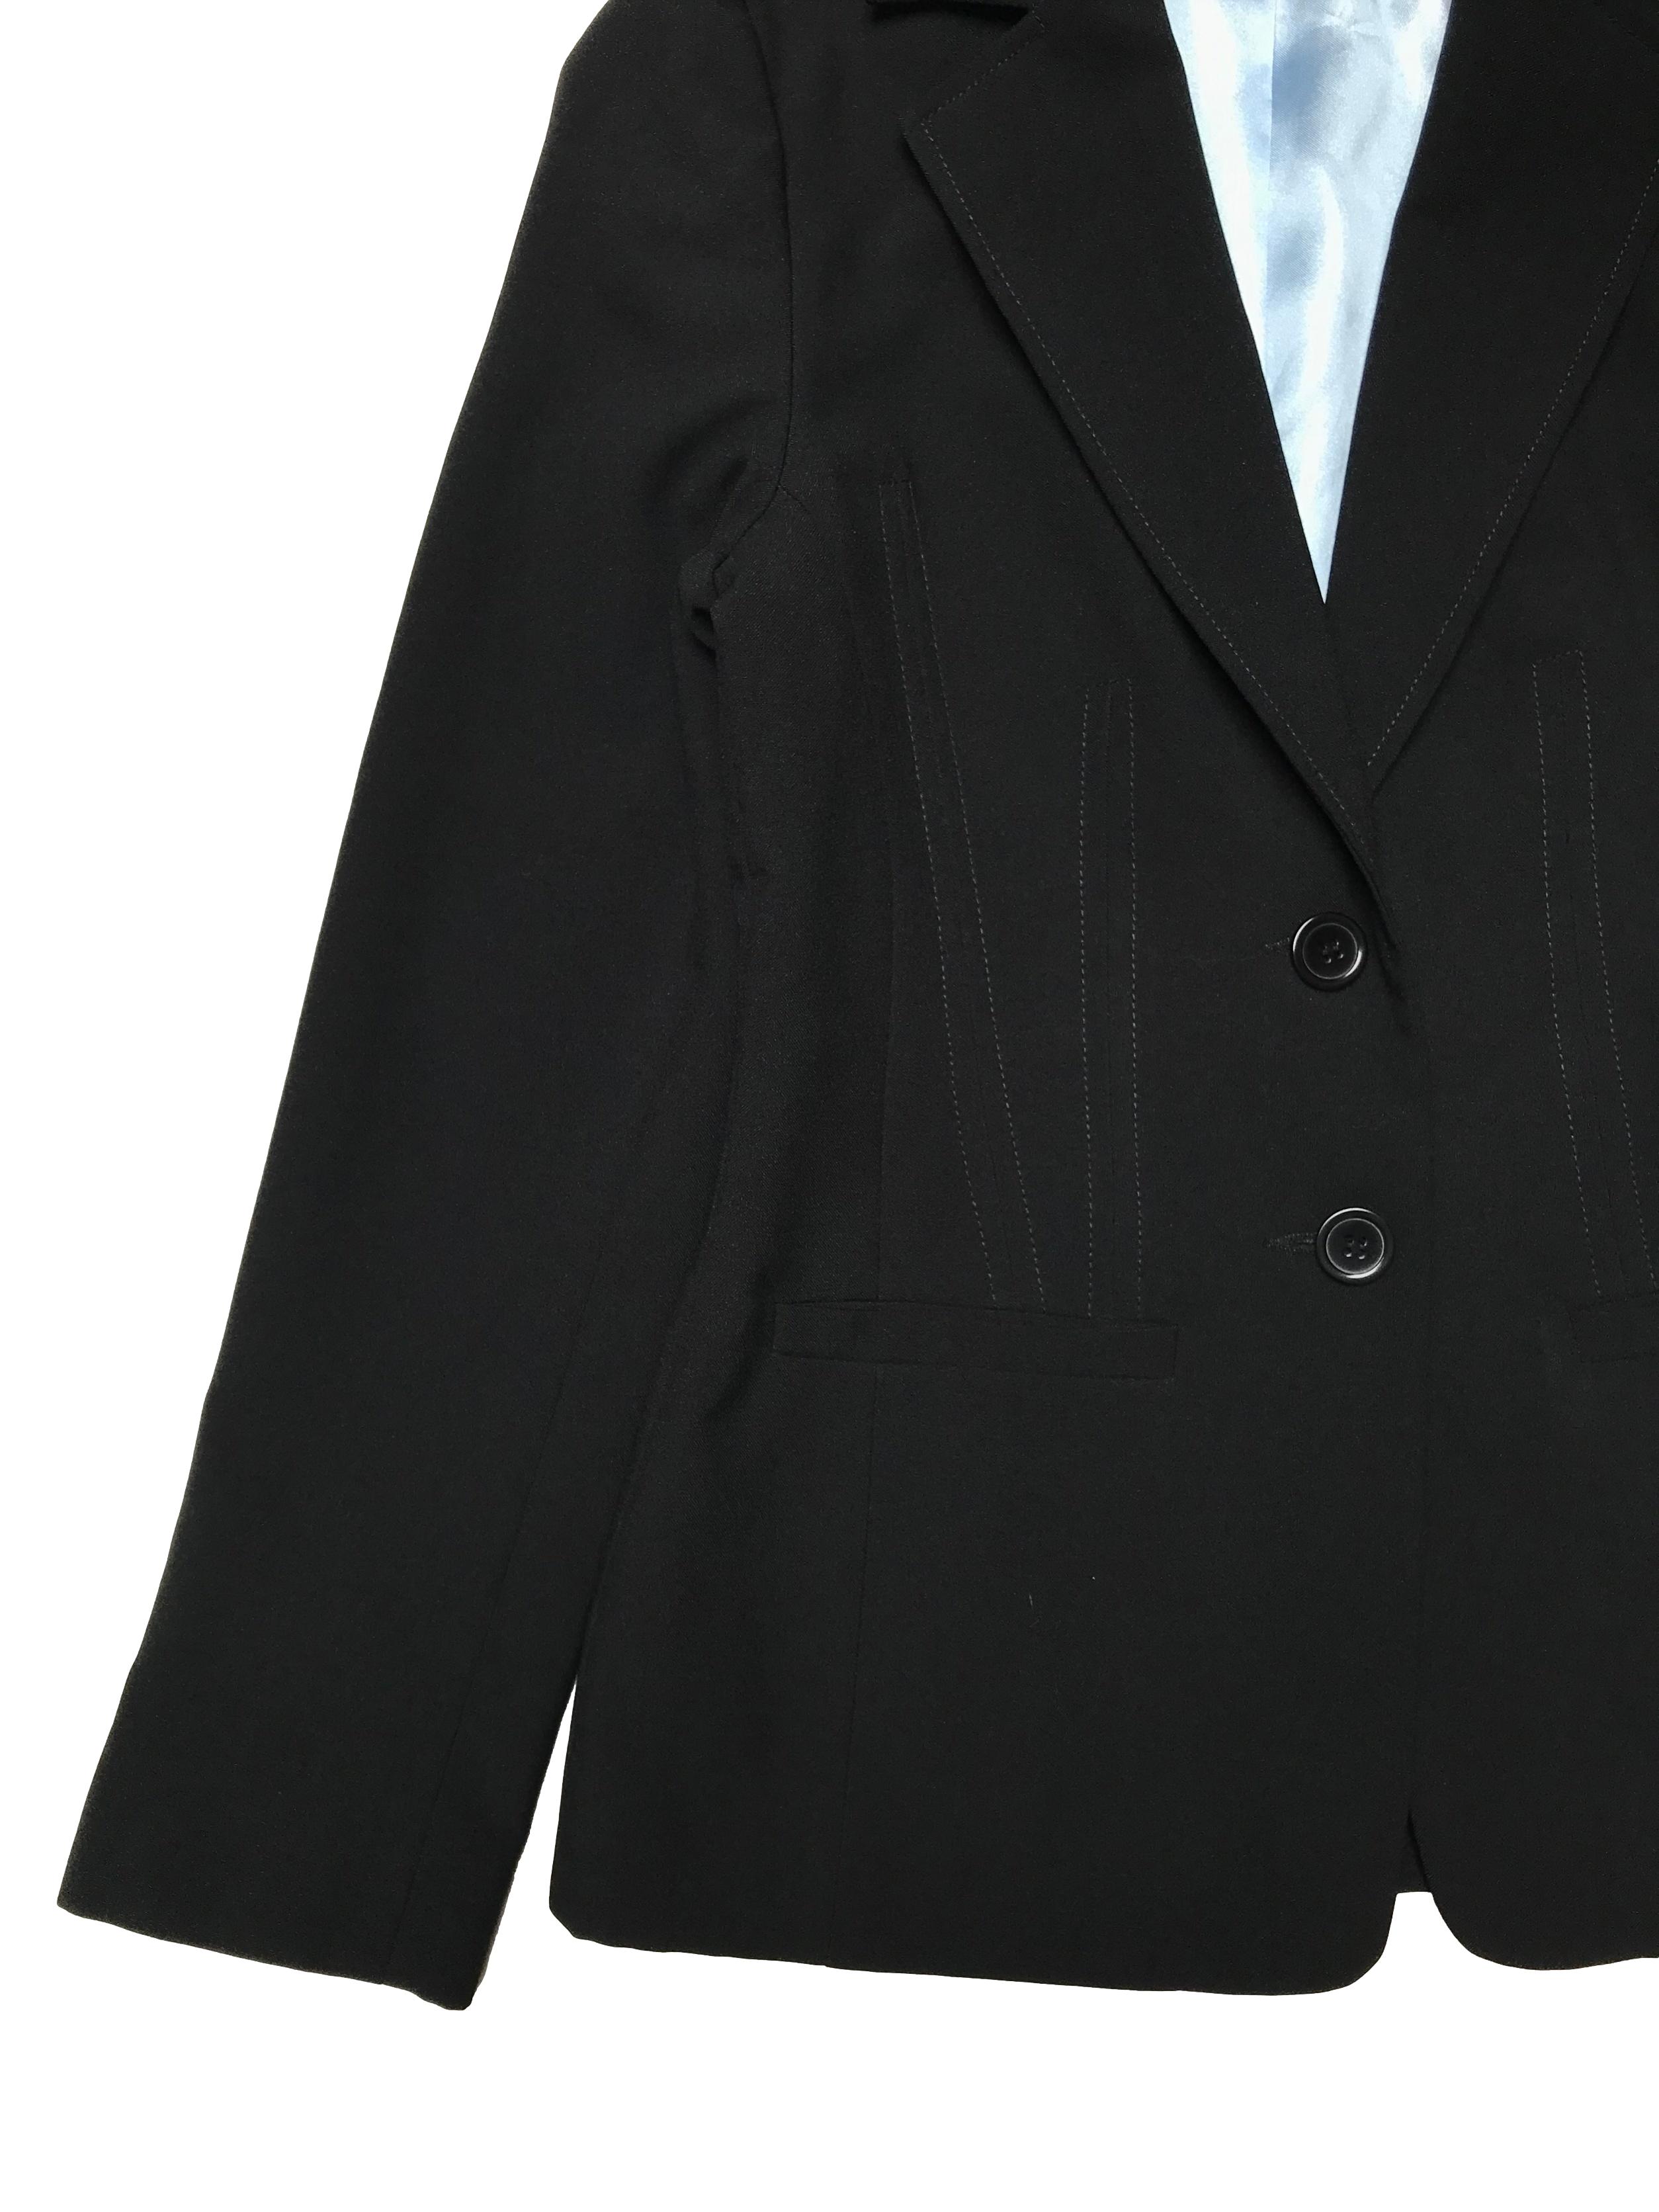 Blazer New Look negro, con pinzas, forrado, tiene solapas, botones y bolsillos delanteros. Busto 90cm Largo 62cm